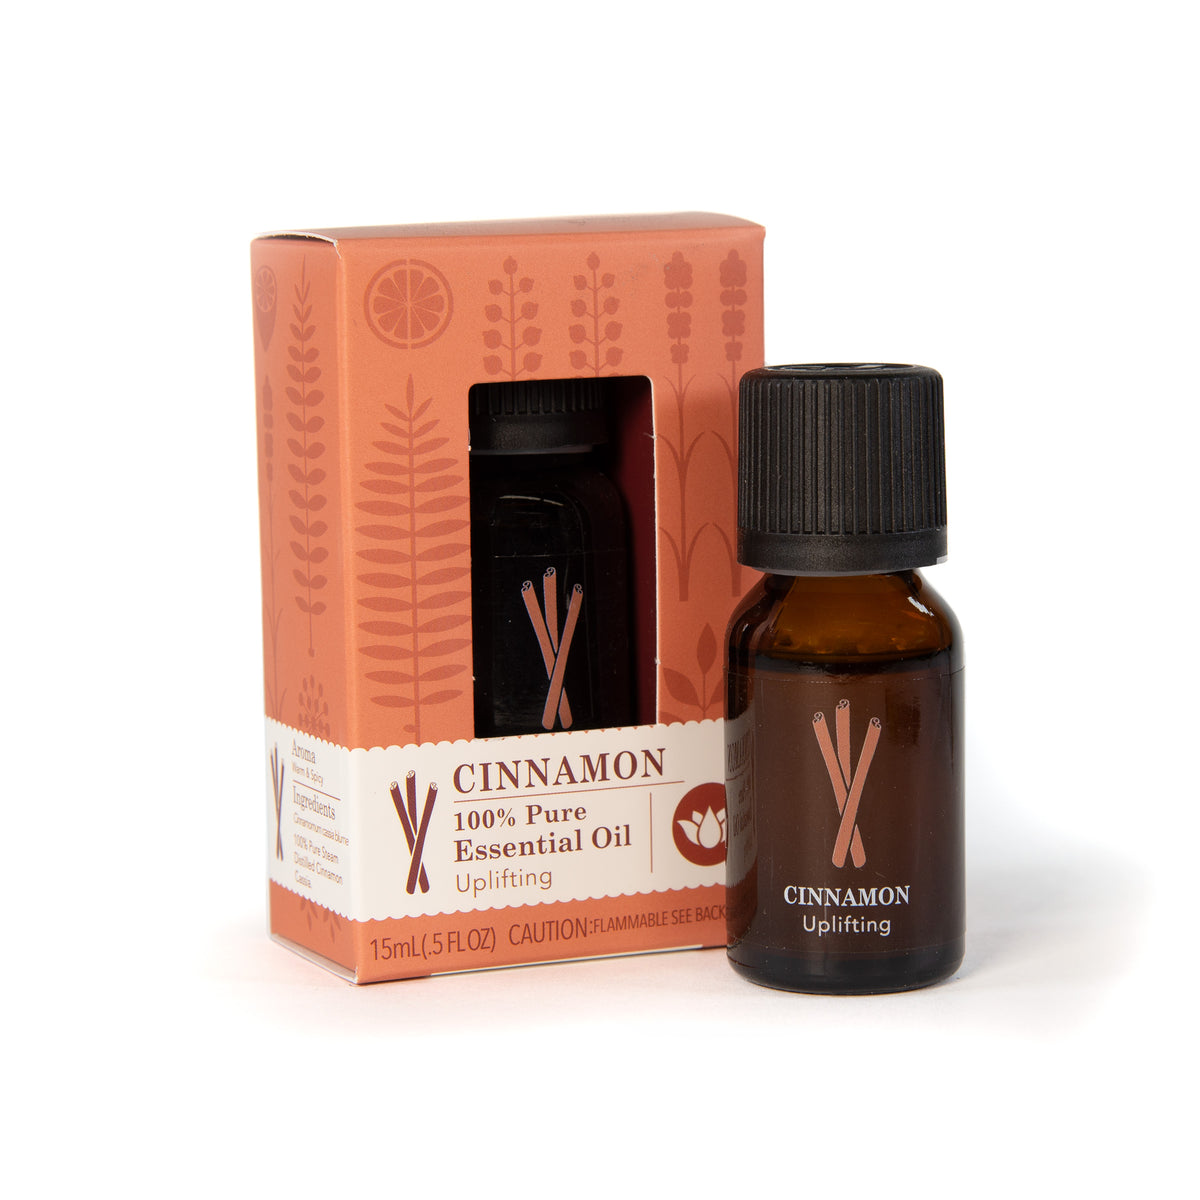 Cinnamon Diffuser Oil – The Magic Scent